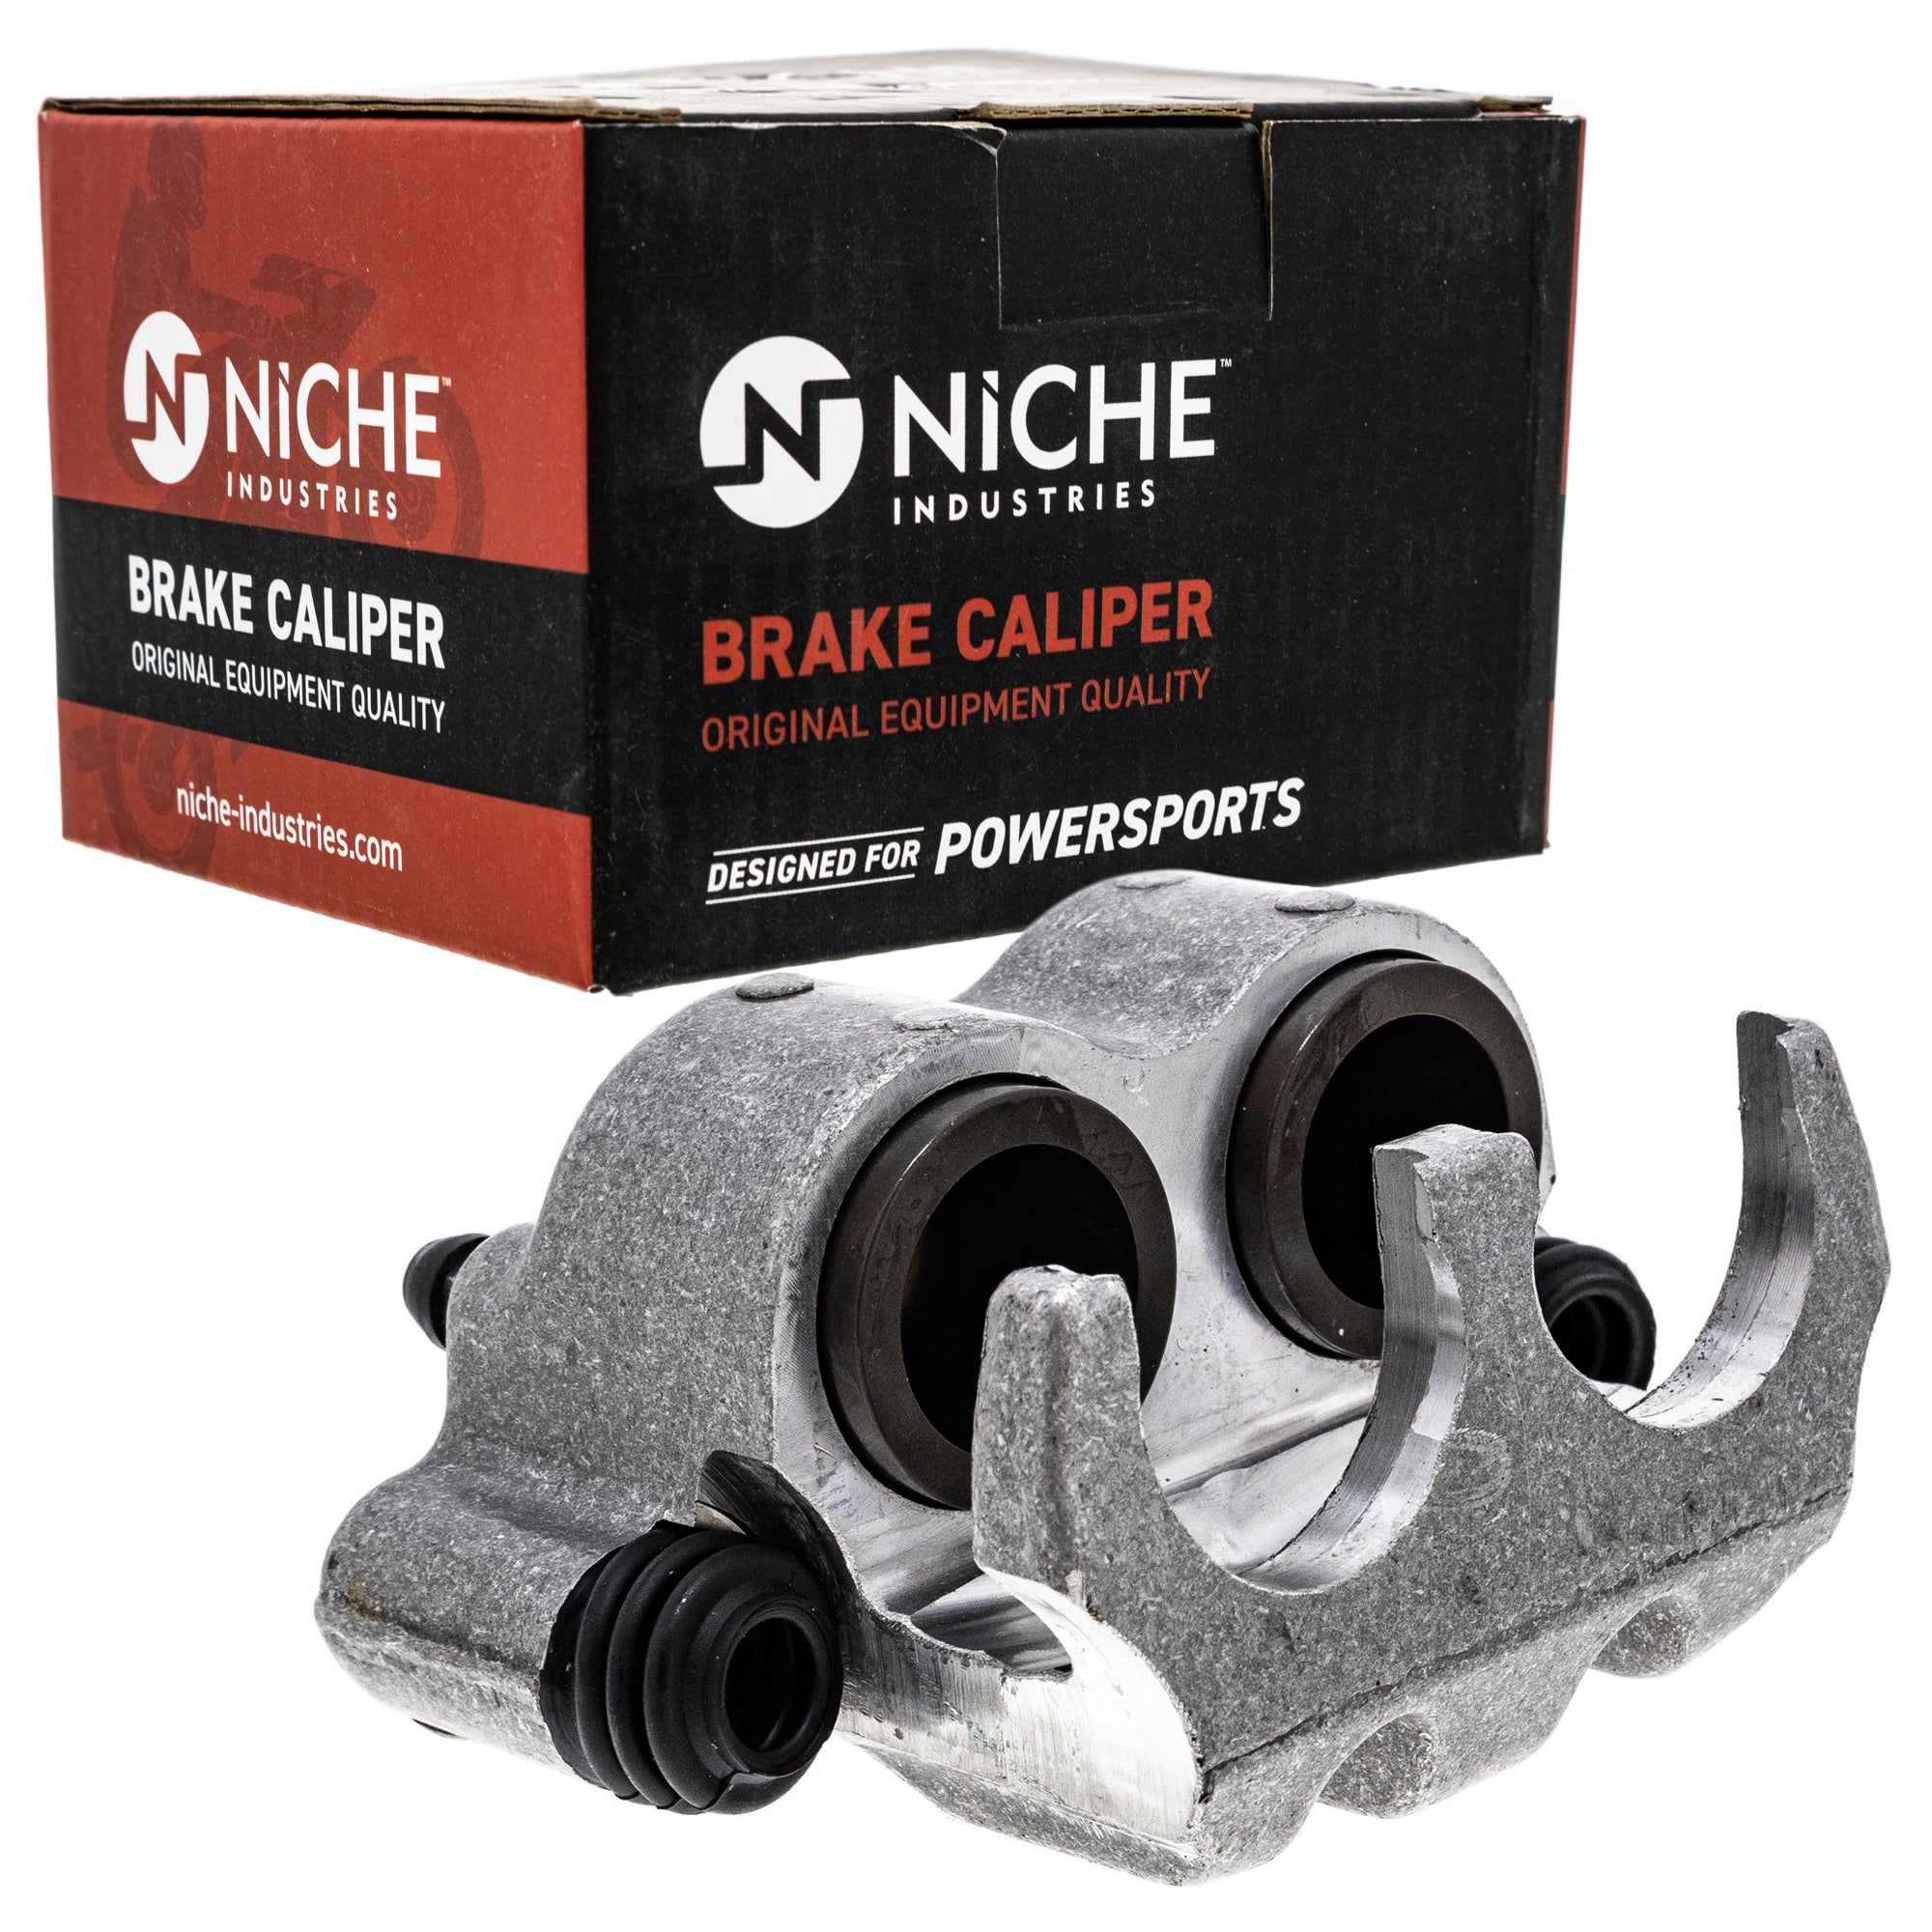 NICHE MK1001254 Brake Caliper Kit